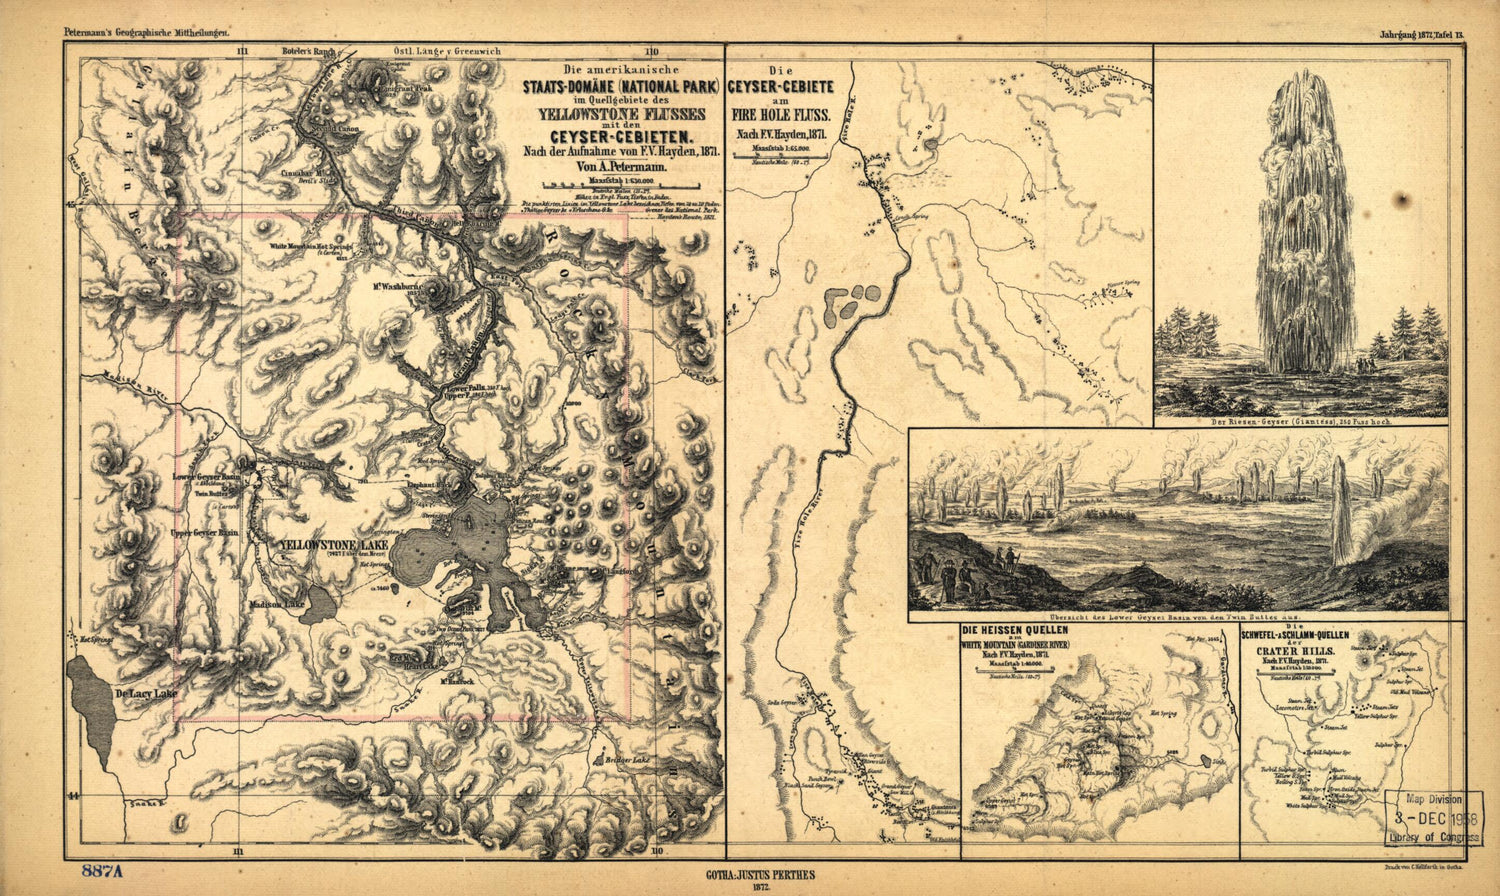 This old map of Domäne (National Park) Im Quellgebiete Des Yellowstone Flusses Mit Den Geyser-Gebieten from 1871 was created by F.V. (Ferdinand Vandeveer) Hayden, Germany) Justus Perthes (Firm: Gotha, A. (August) Petermann in 1871